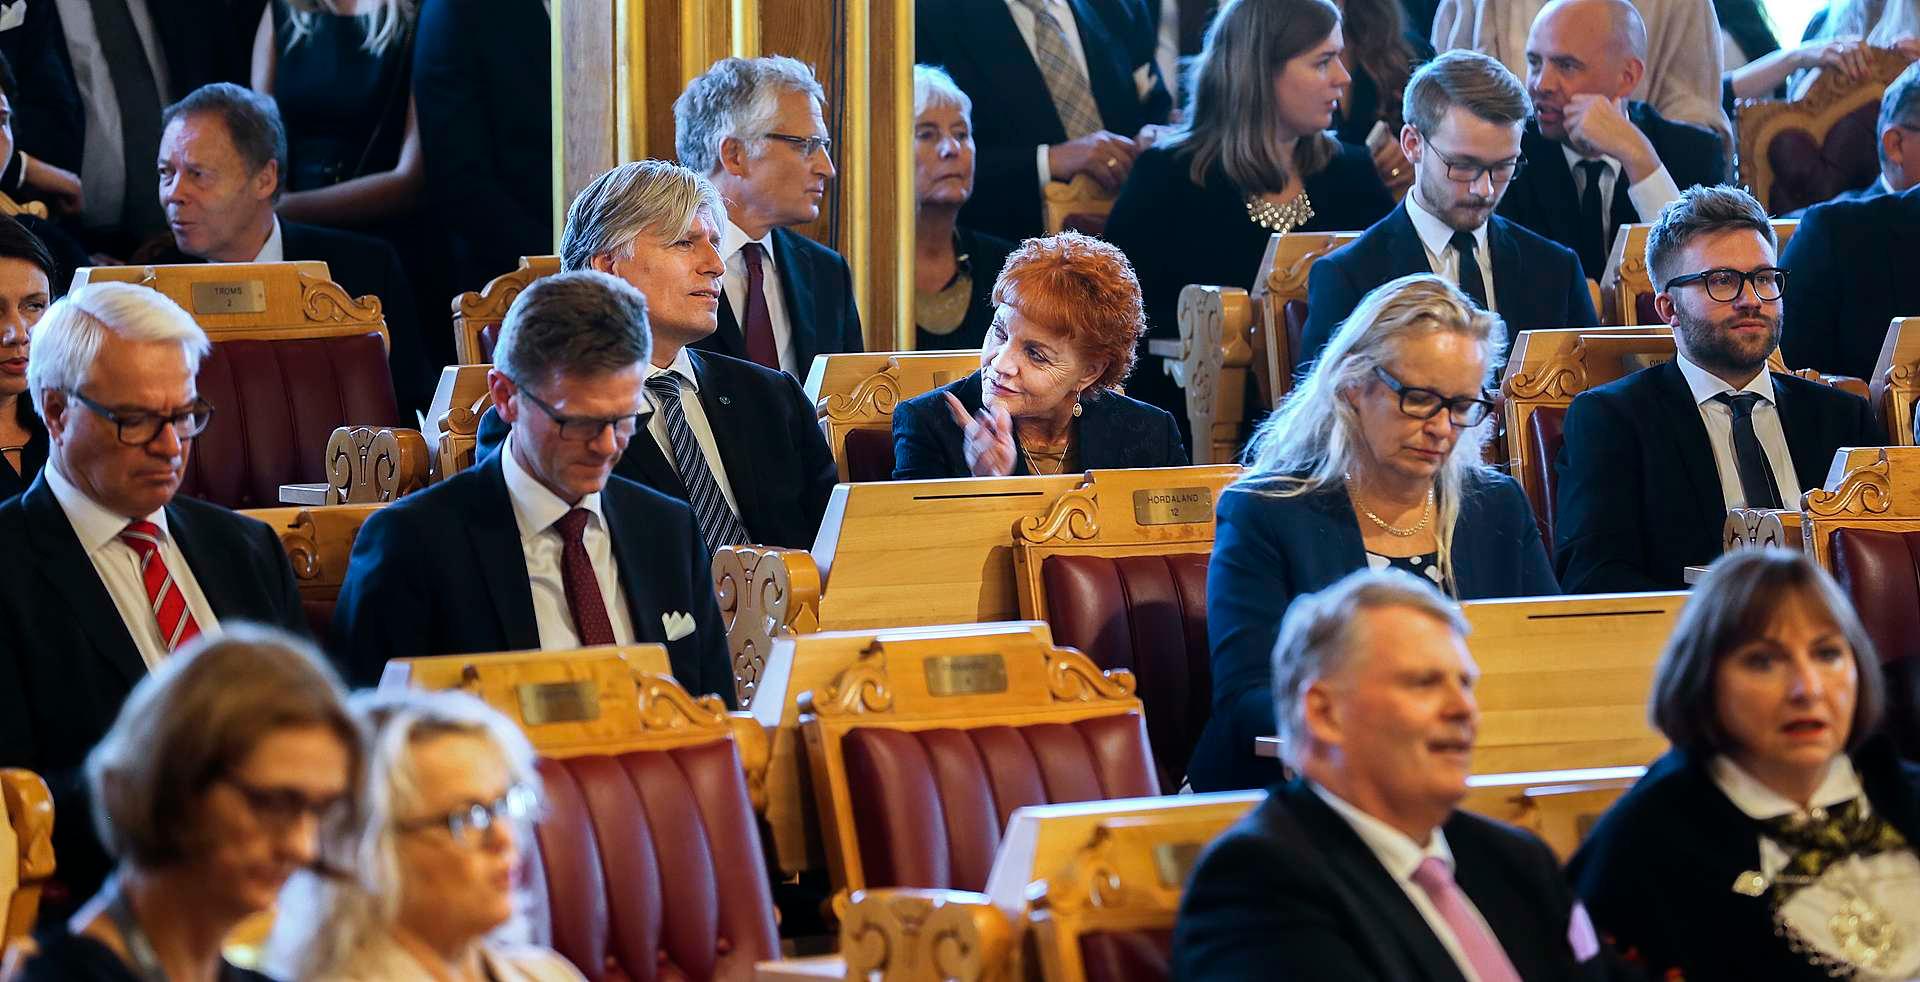 Marit Nybakk har klart den bragden mange mener det er å bli gjenvalgt av Oslo Ap, gang etter gang. Her på Oslo-benken ved siden av Venstre-representanten Ola Elvestuen.